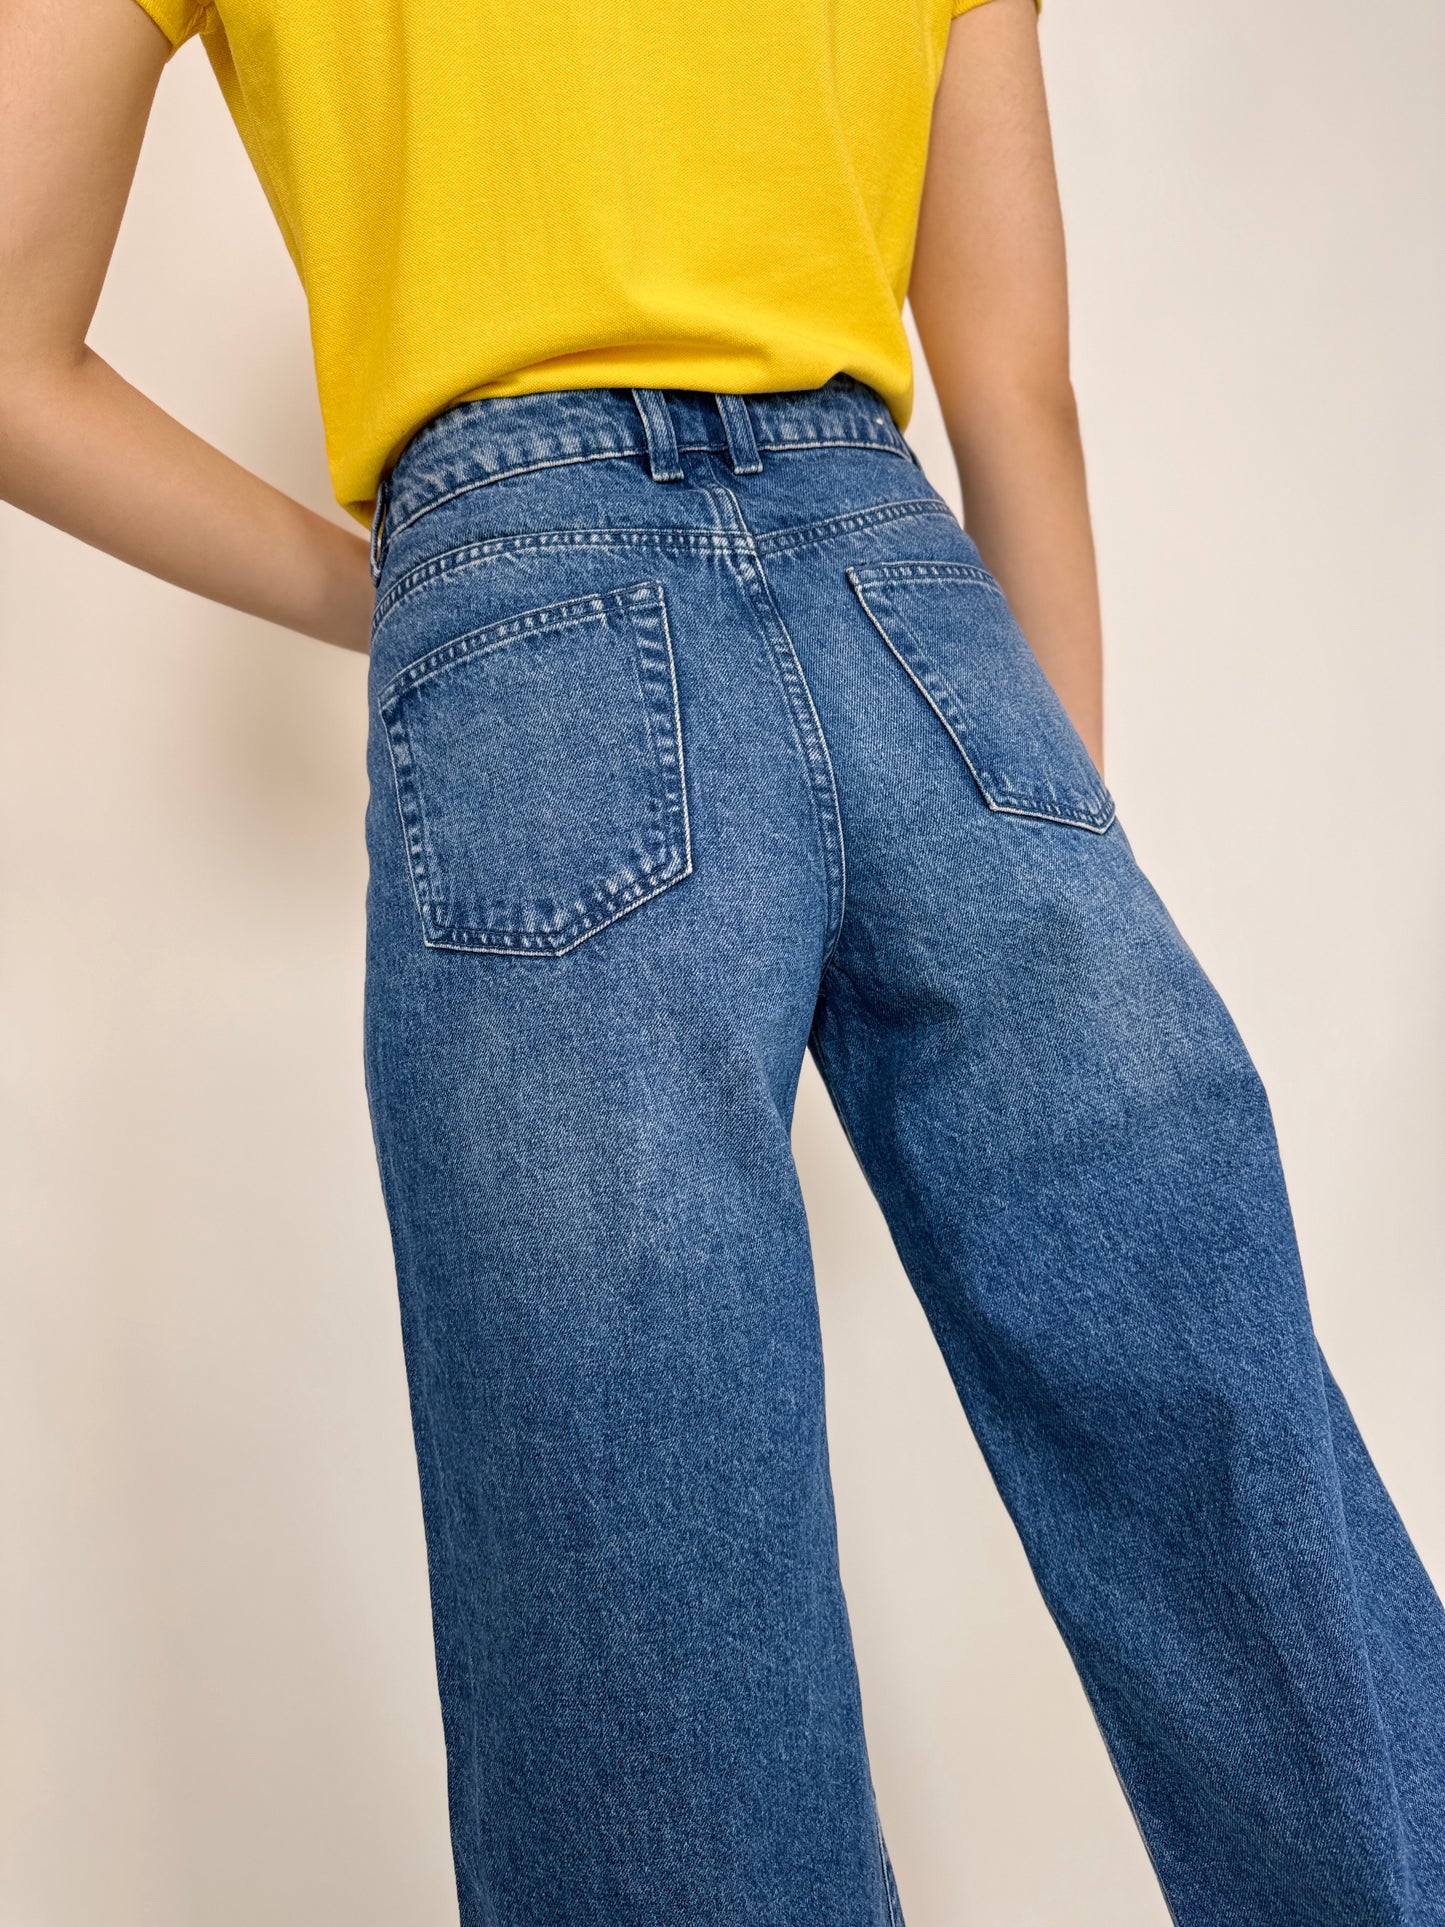 Jeanși culottes cu talie înaltă